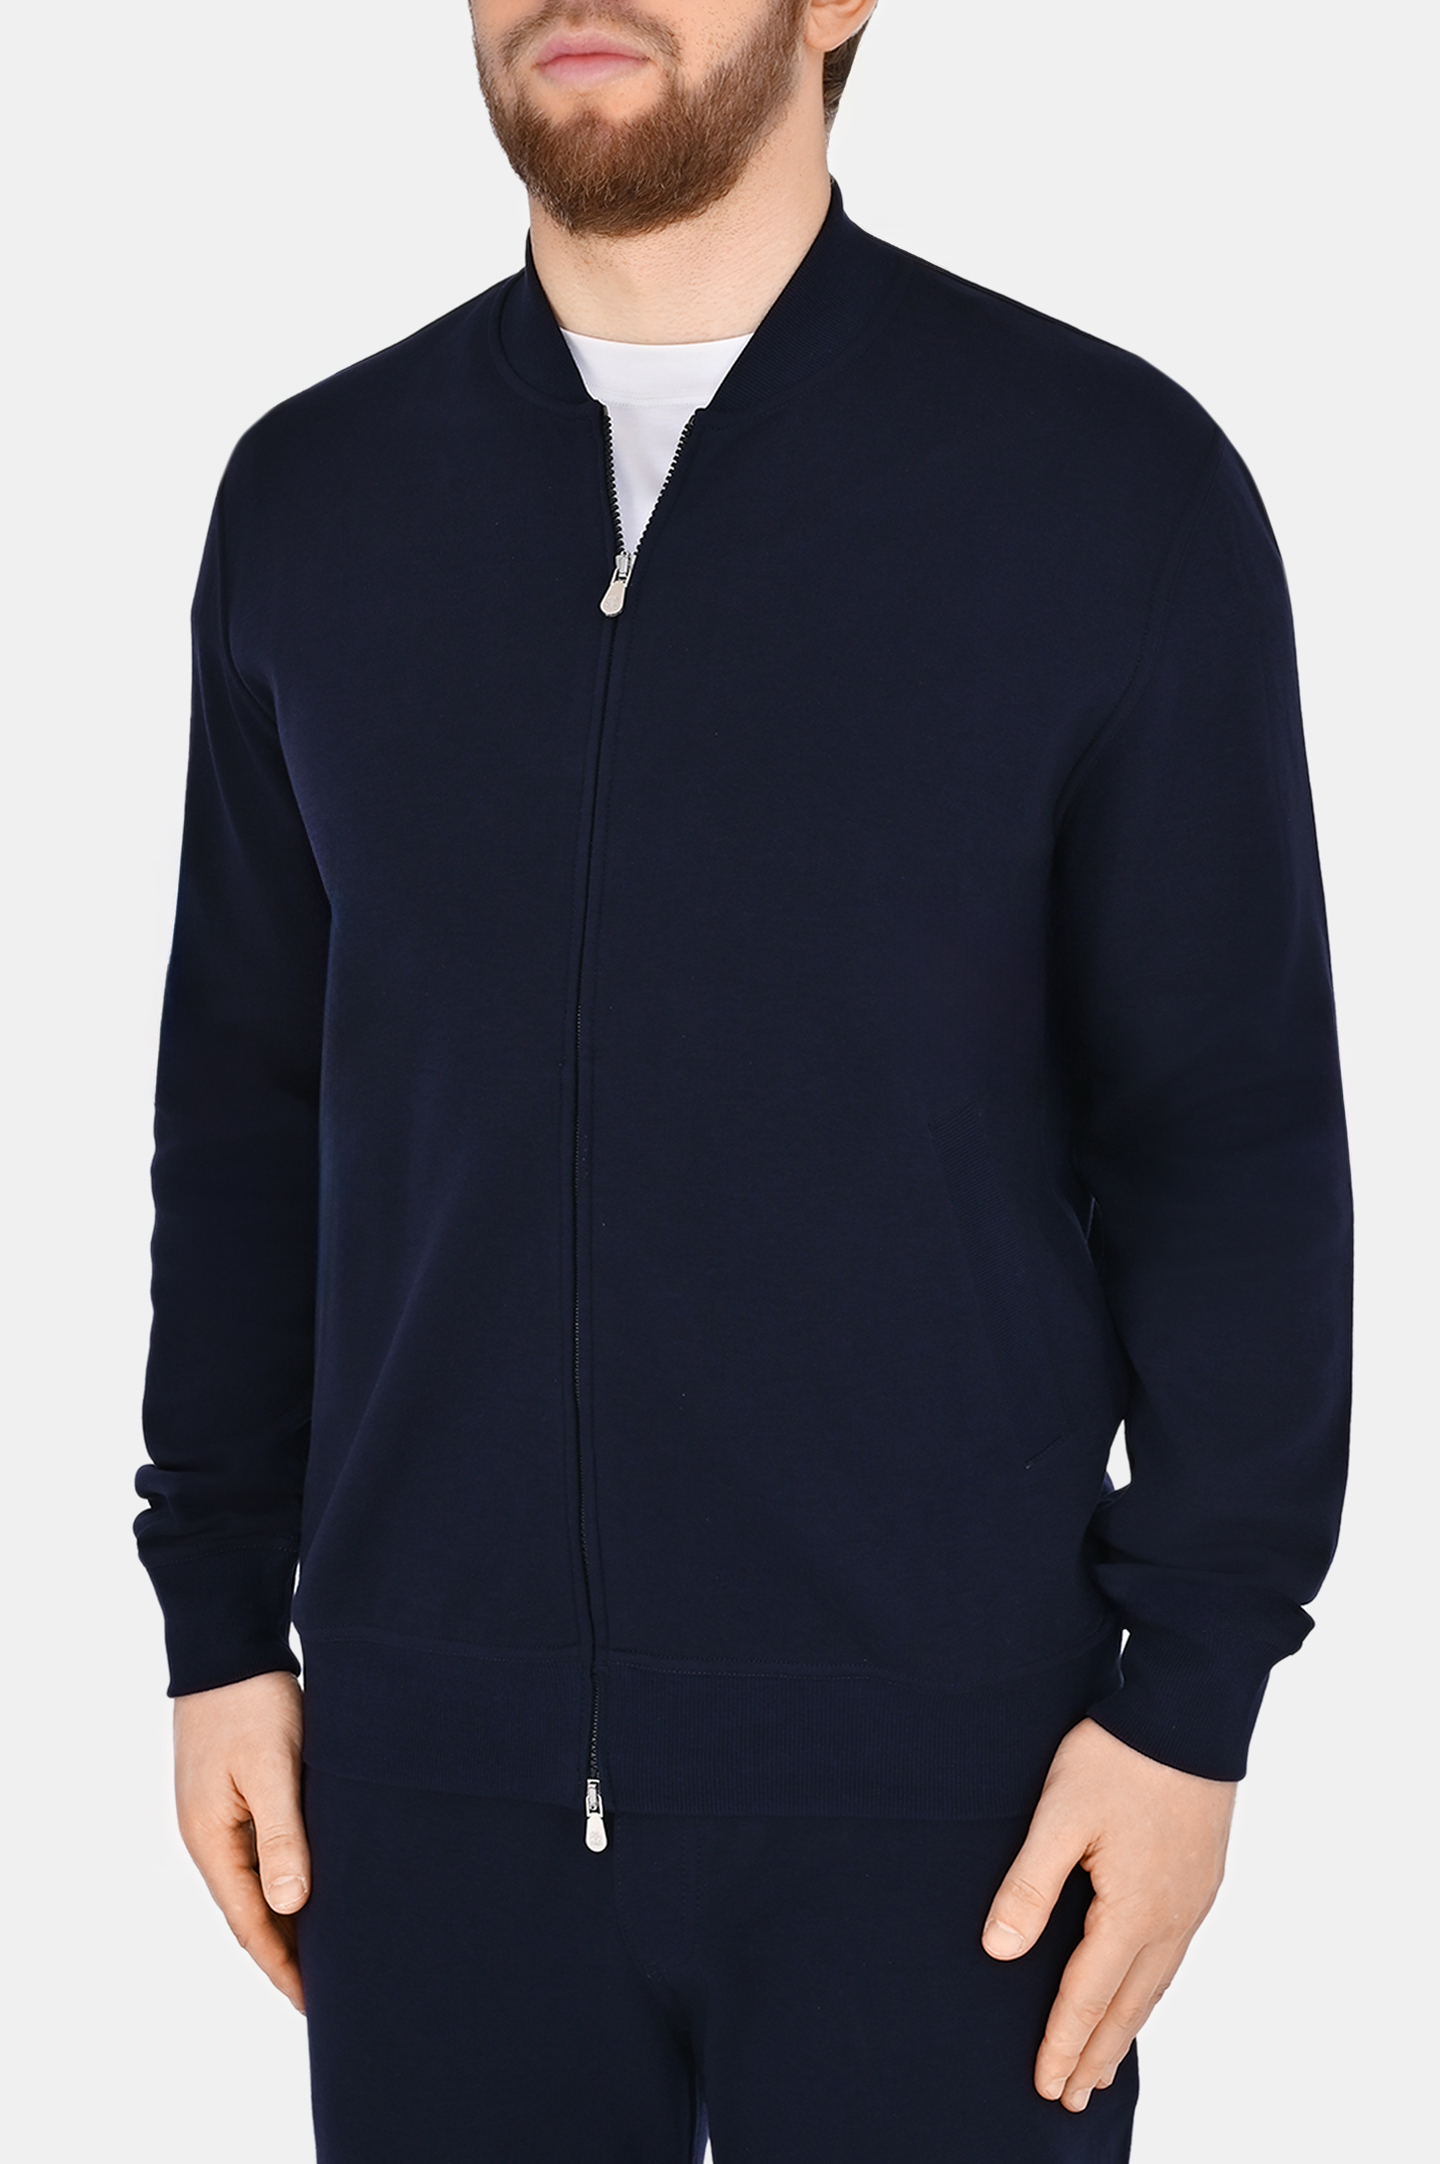 Куртка спорт BRUNELLO  CUCINELLI M0T35B2278, цвет: Темно-синий, Мужской